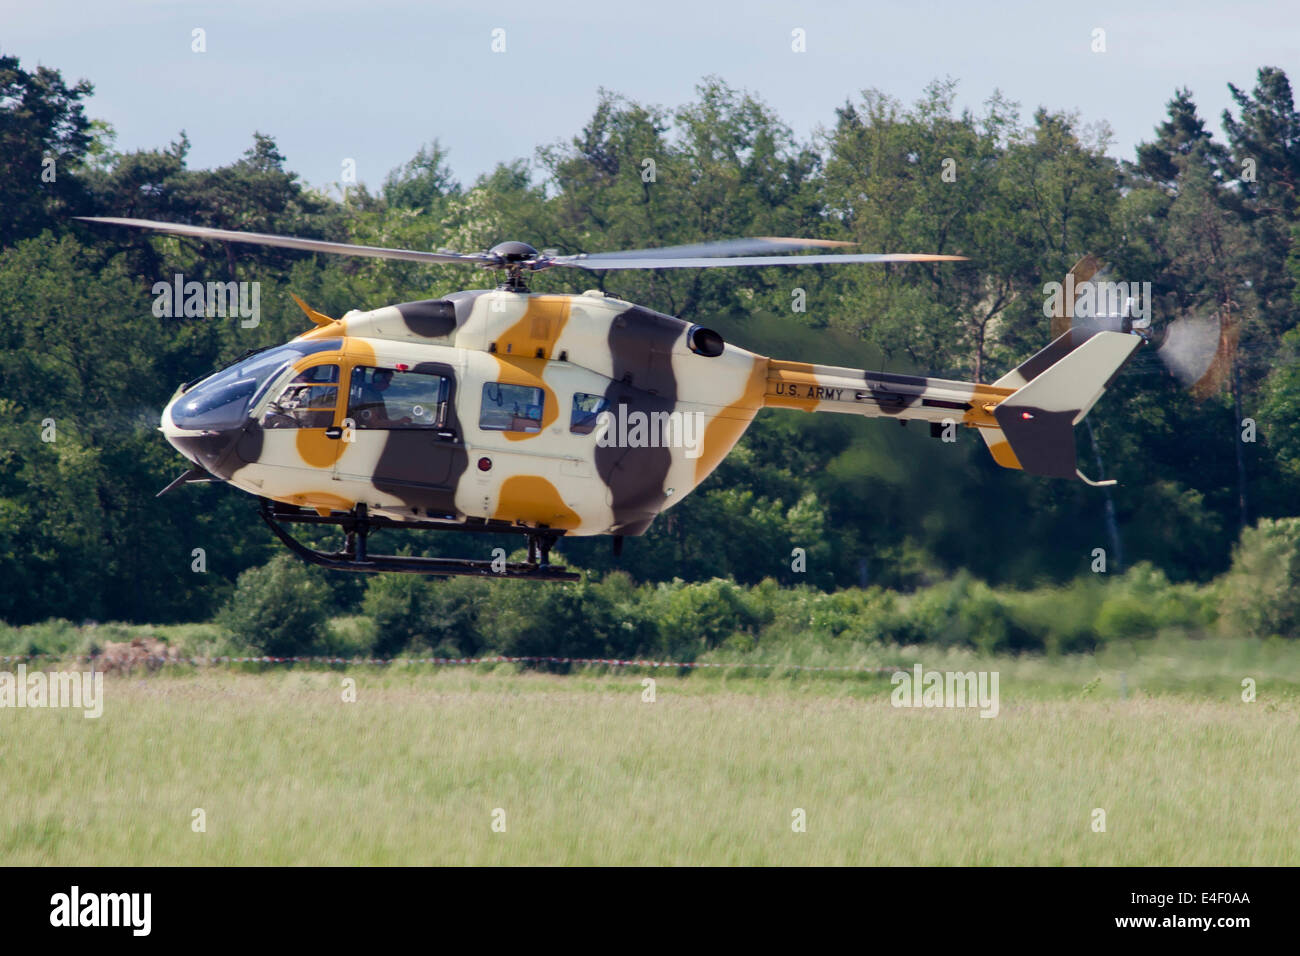 Eurocopter UH-72A Lakota von der US-Army in Europa in einem ausgefallenen Aggressor camouflage Lackierung, Berlin, Deutschland. Stockfoto